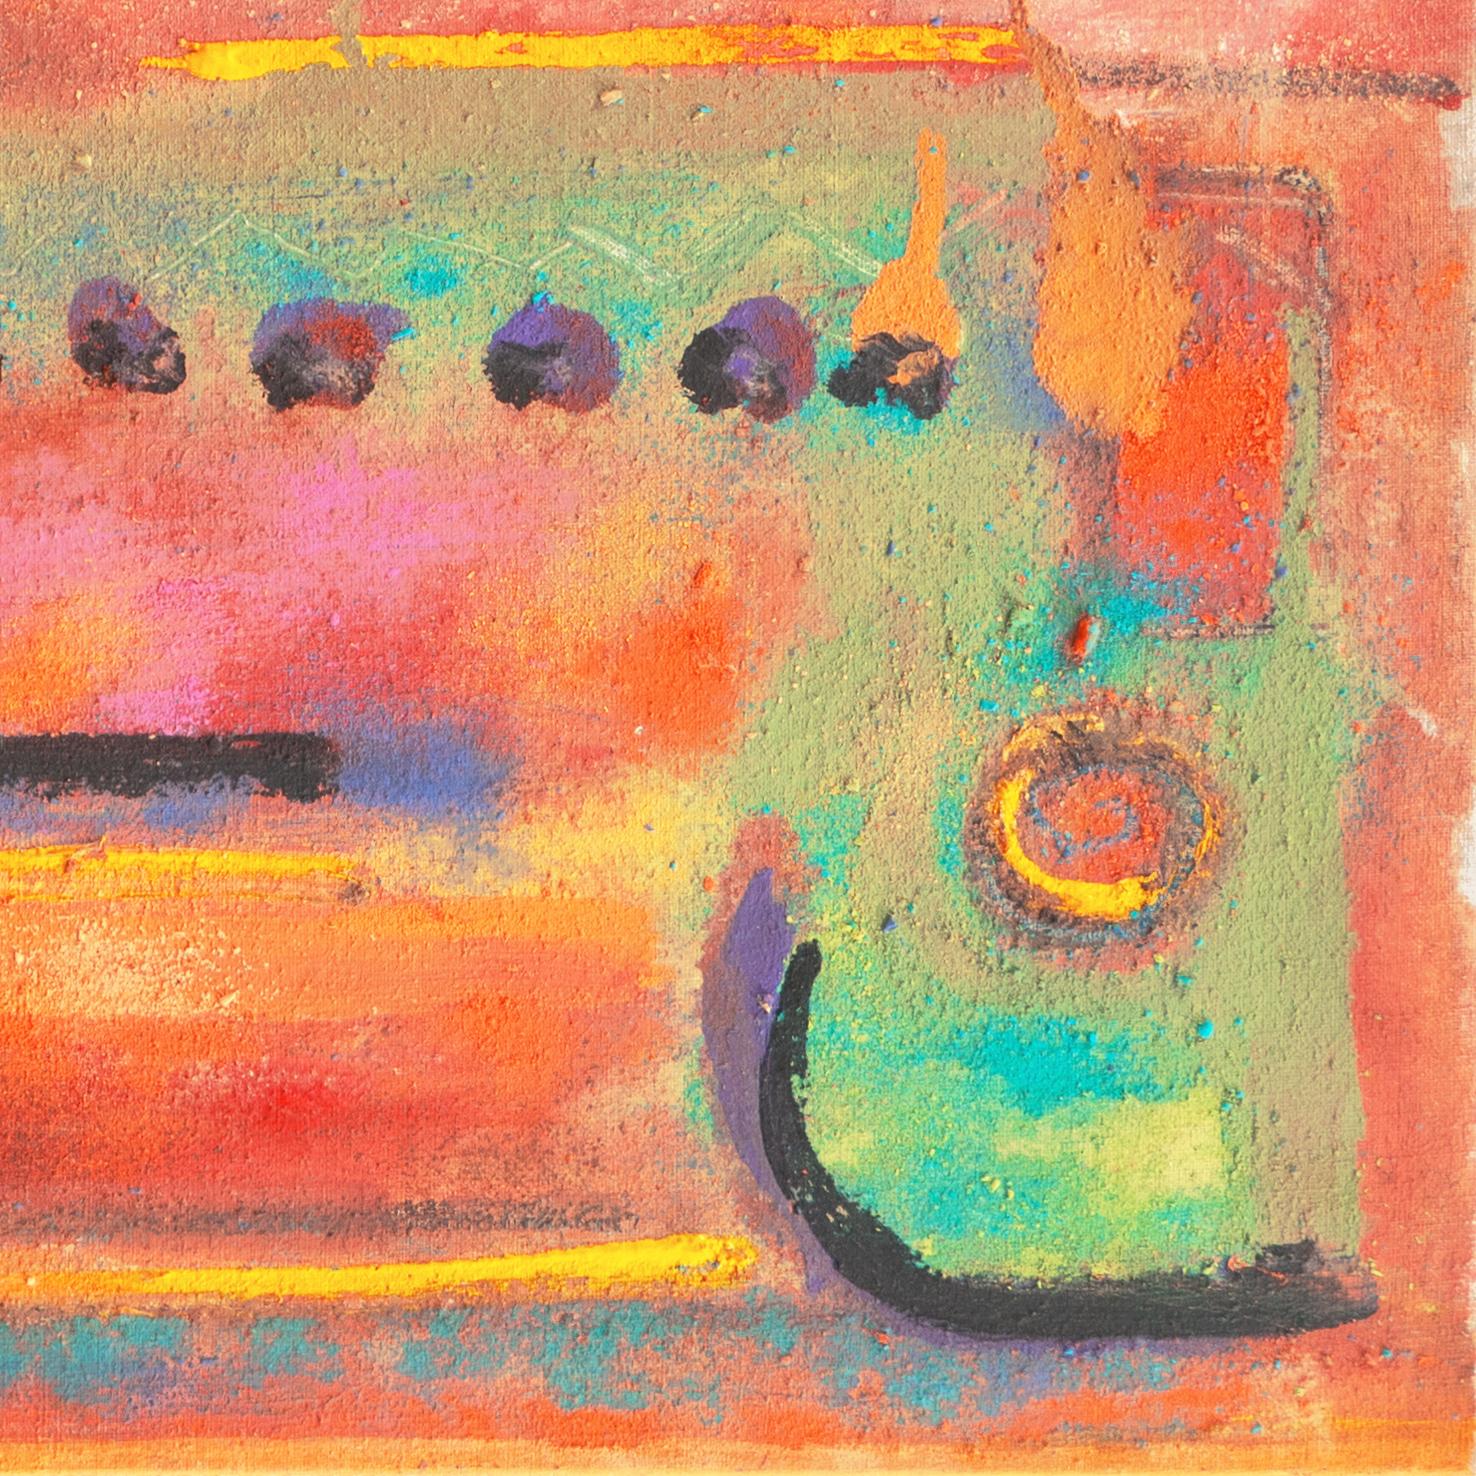 Amerikanische Schule, unsigniert, gemalt um 1975.

Ein lebhaftes und fröhliches abstraktes Ölgemälde, das aus einzelnen goldgelben, korallenfarbenen und türkisblauen Flächen besteht, die an eine sonnenbeschienene Landschaft erinnern.